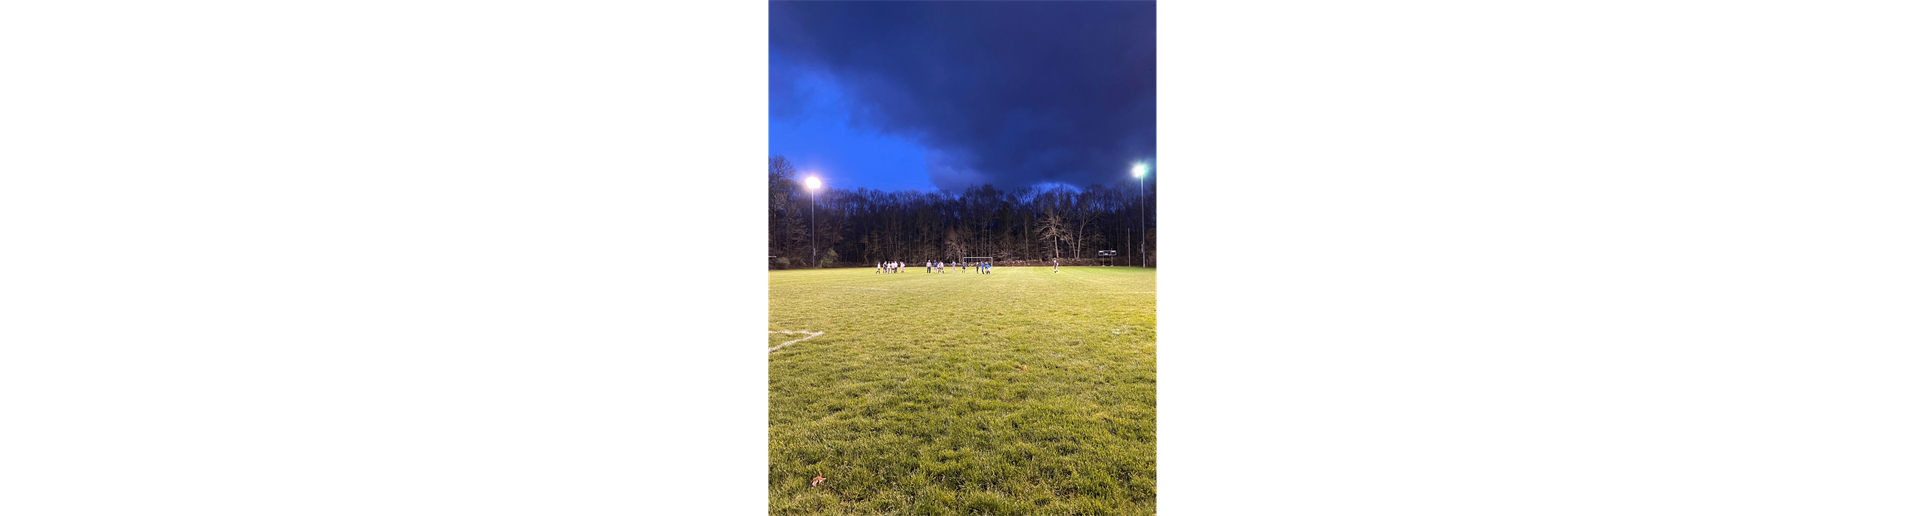 Evening Field practice